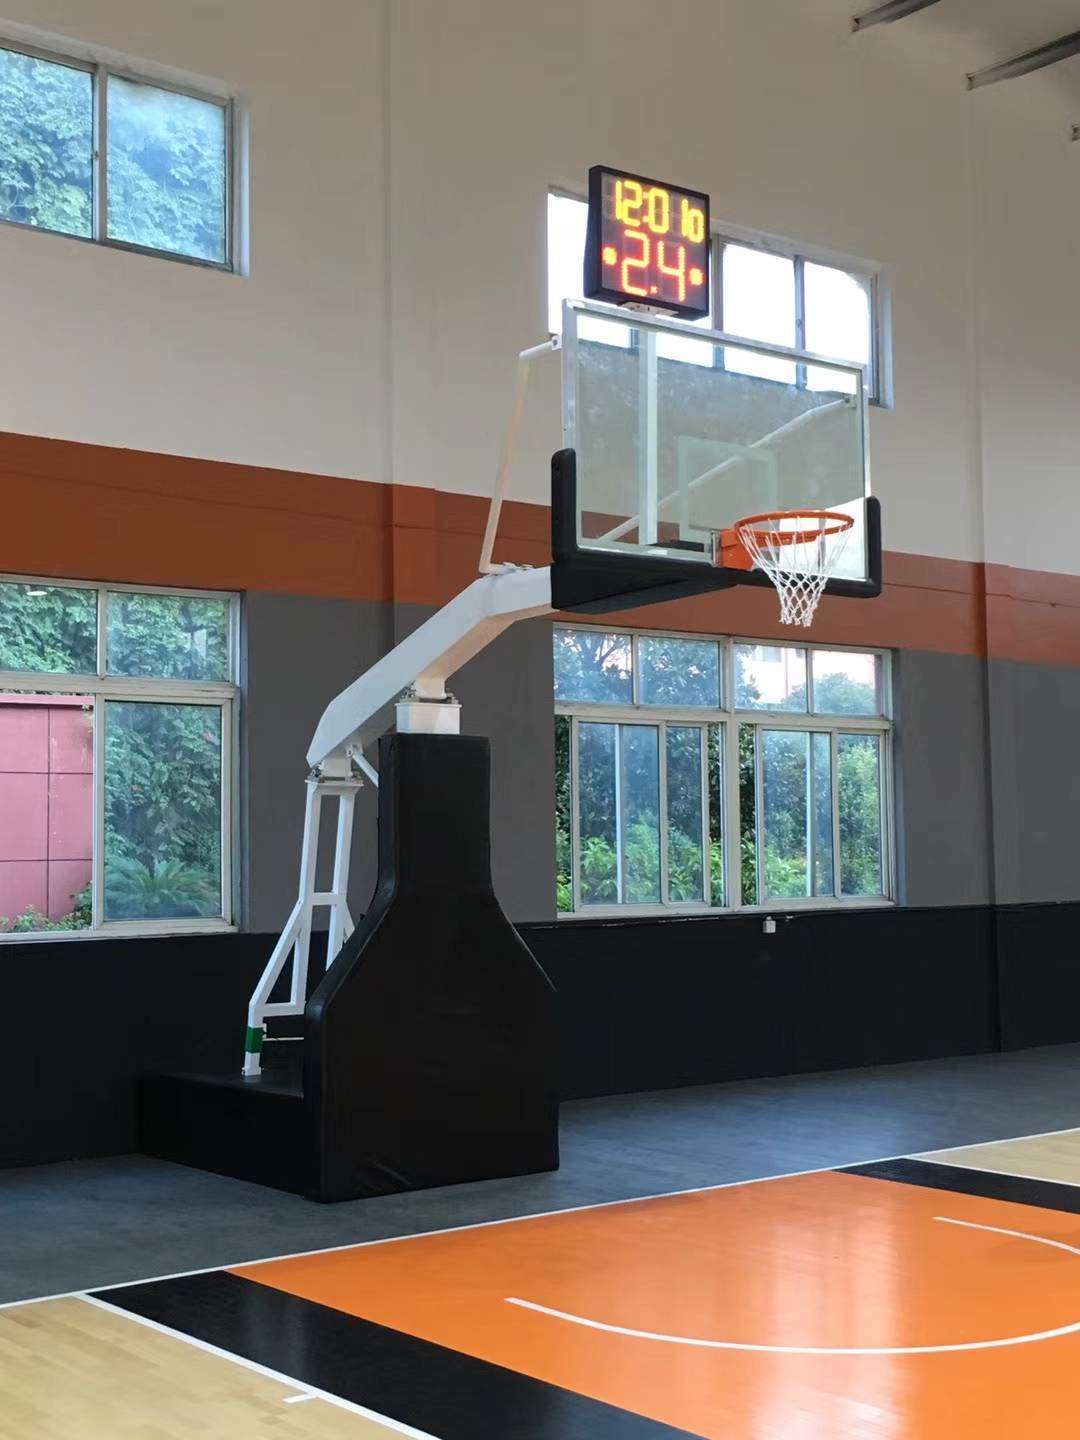 大兴安岭篮球架厂家直销 篮球架供应厂家 产地低价直销